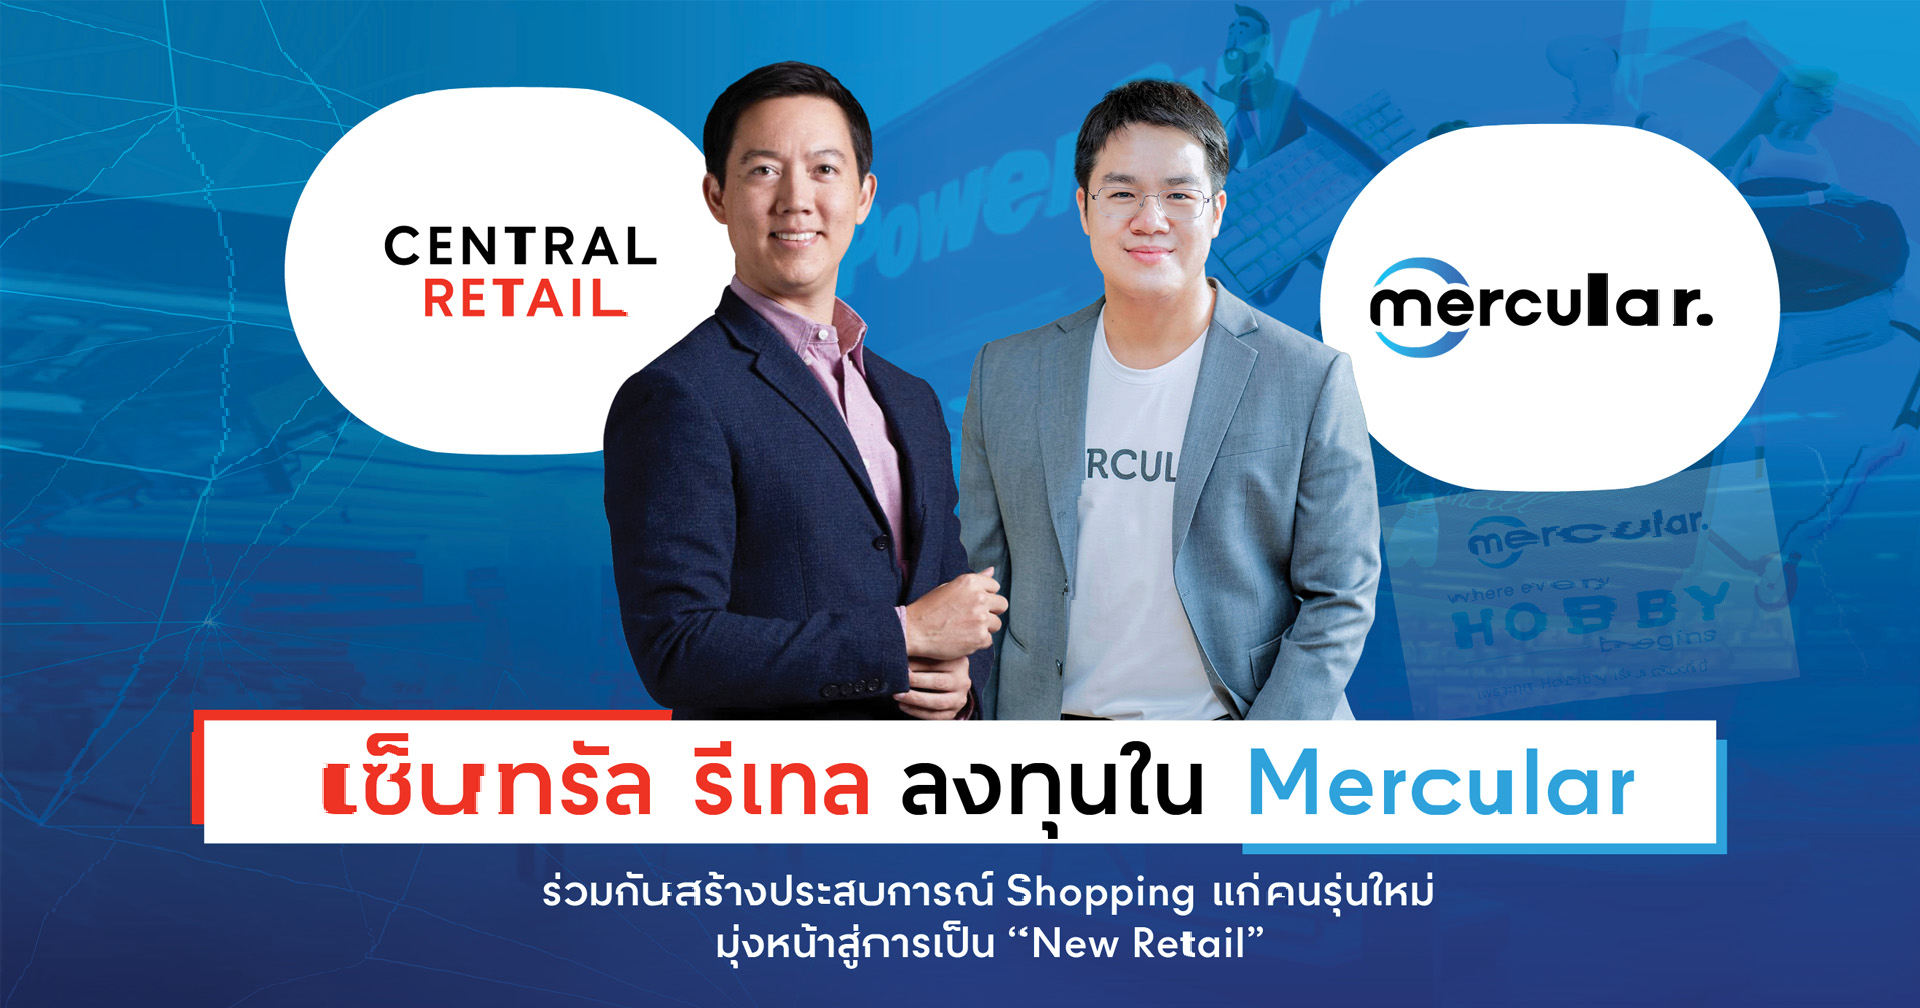 เซ็นทรัล รีเทล ลงทุนใน Mercular ร่วมกันสร้างประสบการณ์ Shopping แก่คนรุ่นใหม่